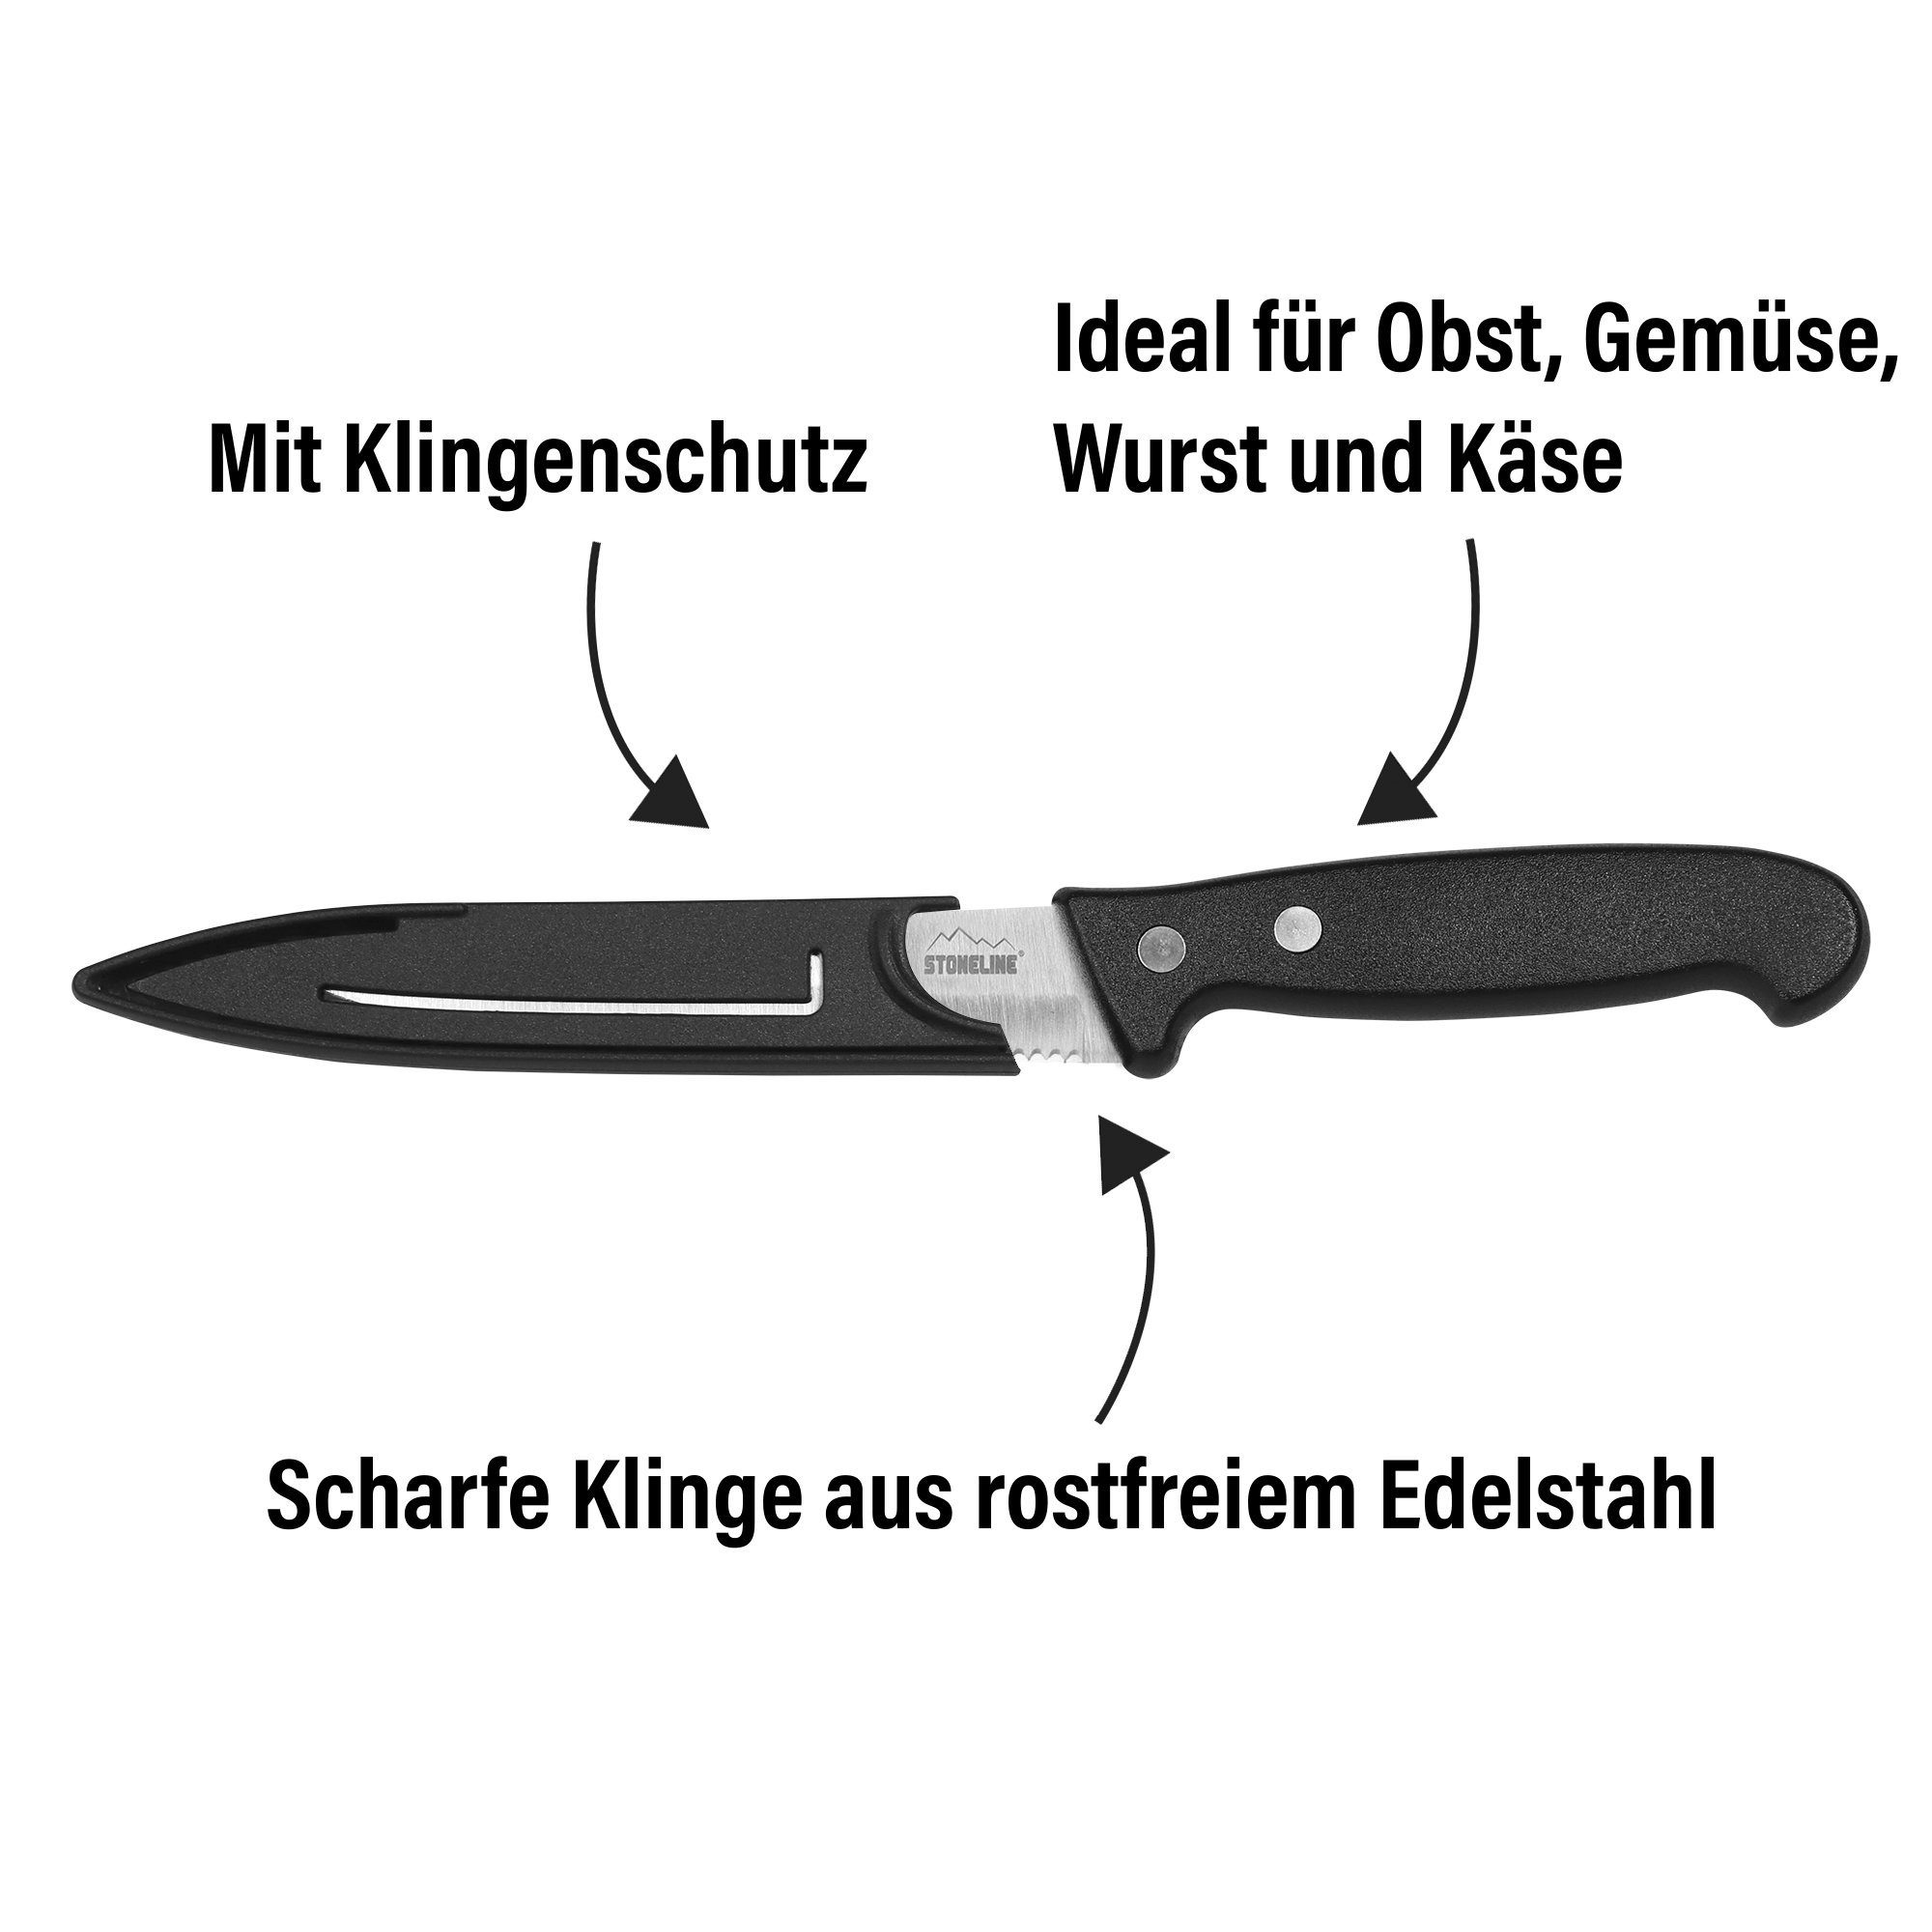 Edelstahl rostfrei, in STONELINE Tomatenmesser, mit Klingenschutz, Germany Designed